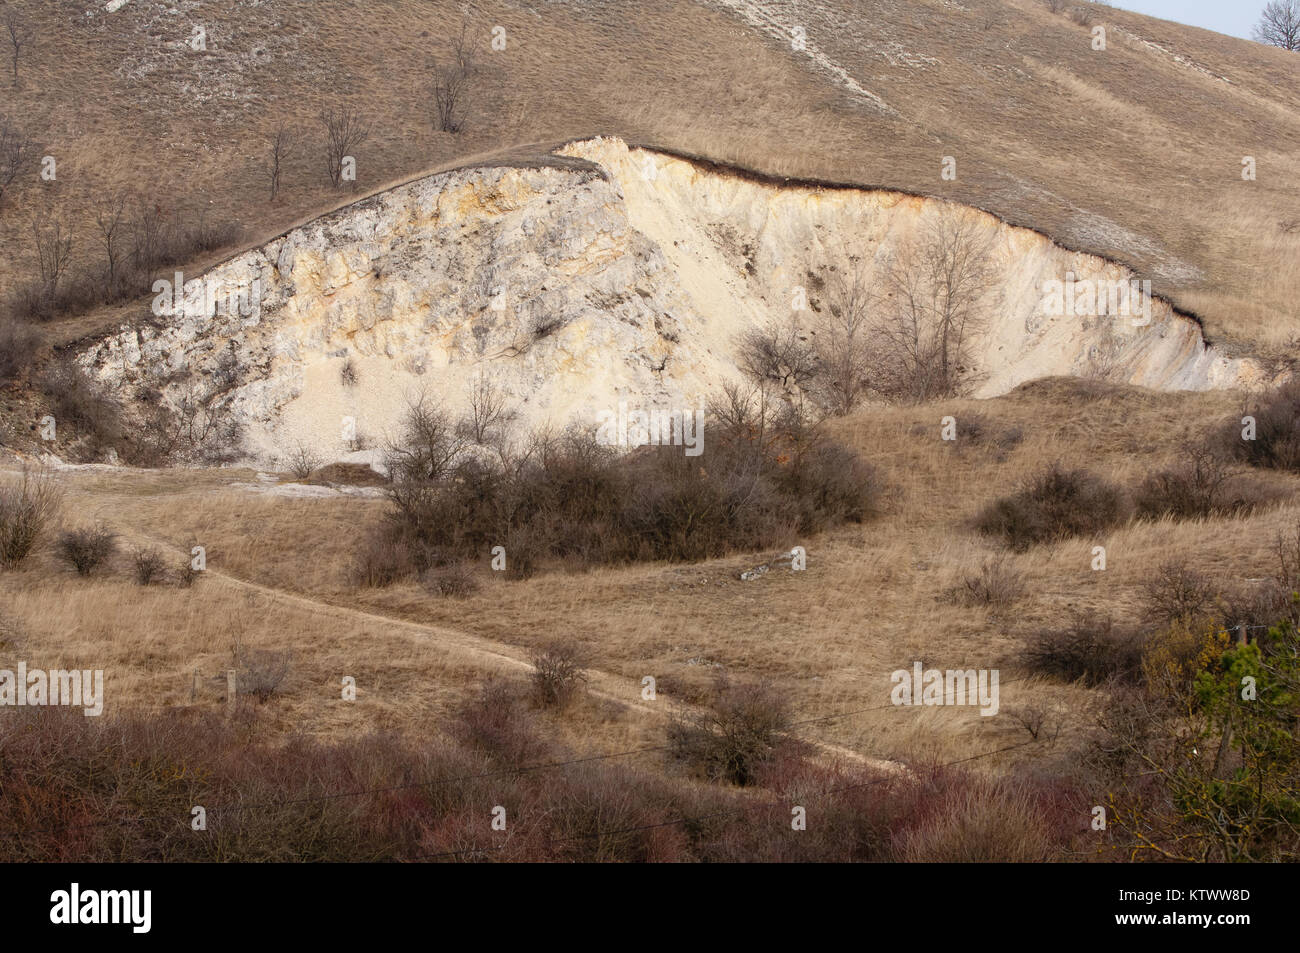 Abandoned quarry or surface mine, damaged landscape Stock Photo